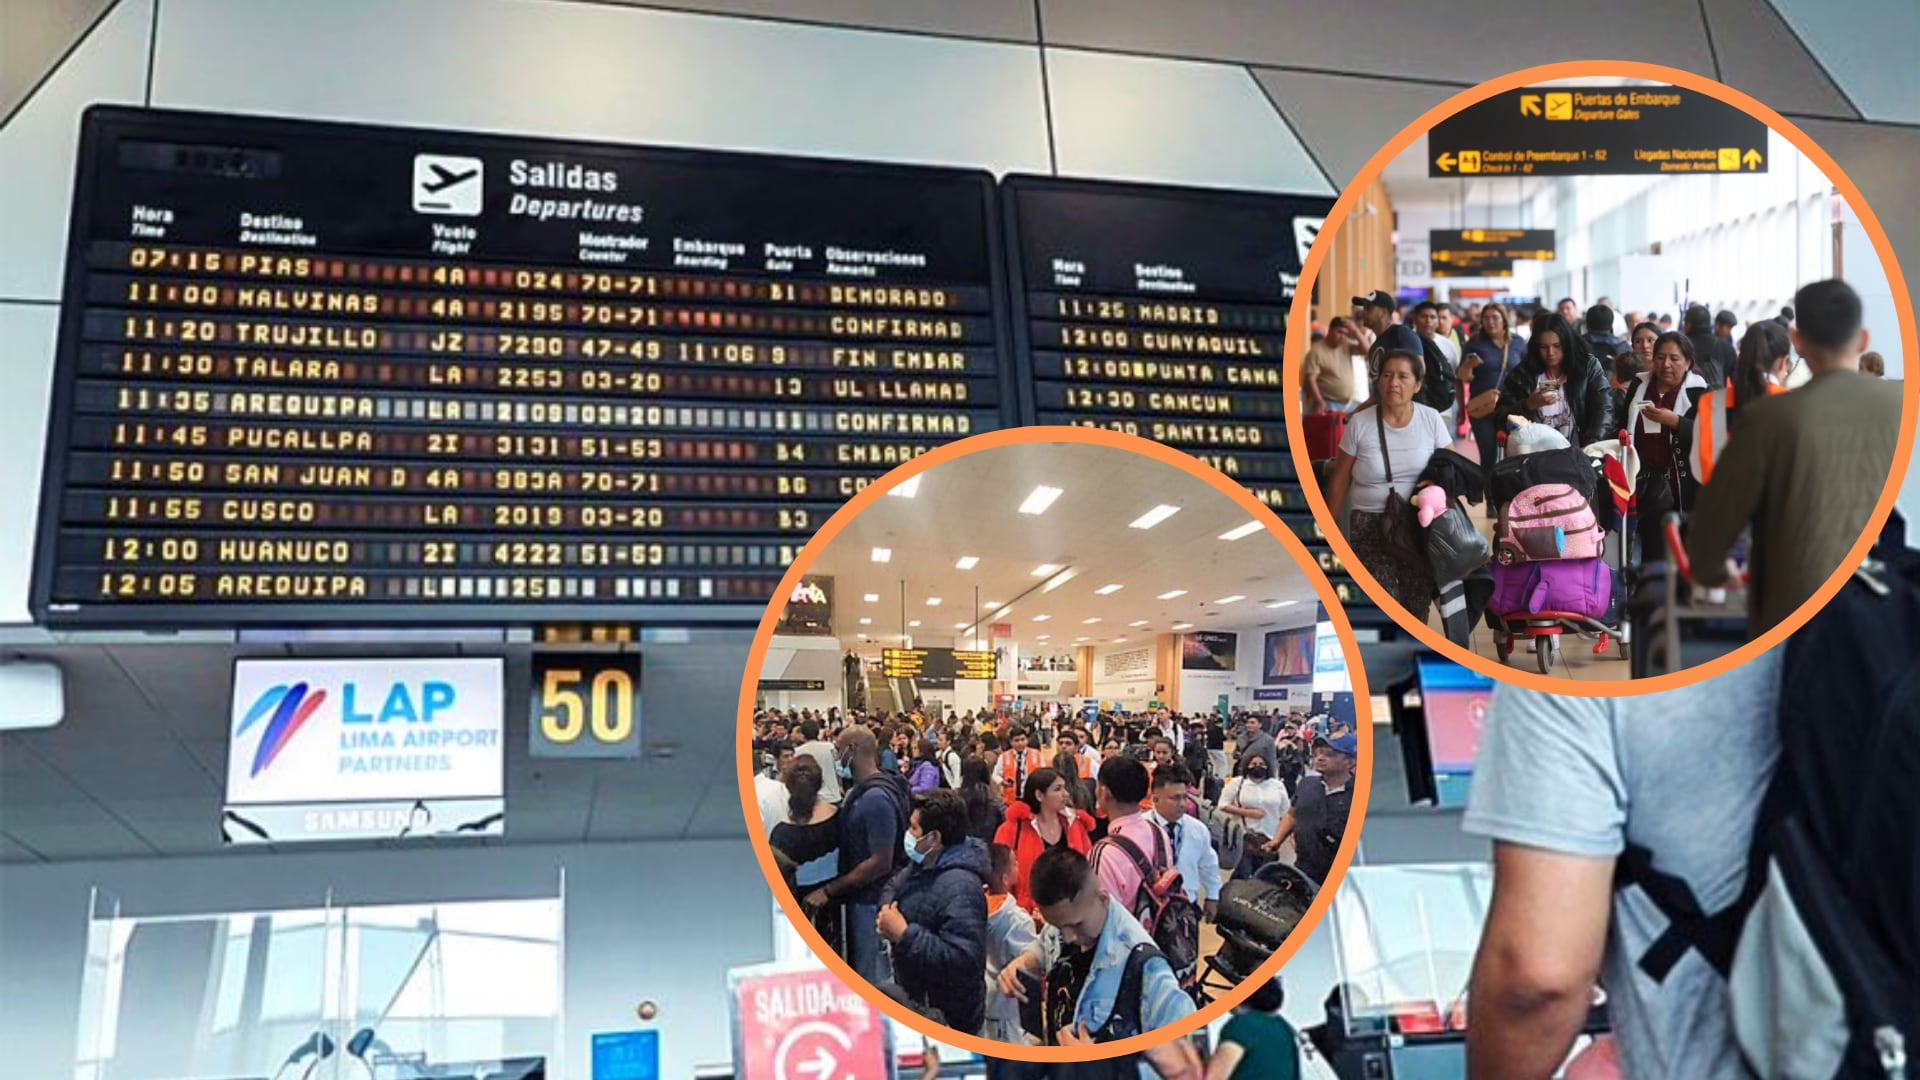 La falla en el sistema de luces del Aeropuerto Jorge Chávez ha generado incertidumbre y frustración entre pasajeros y sus familias, con vuelos redirigidos y retrasados. (Composición: Infobae / Andina / El Peruano)